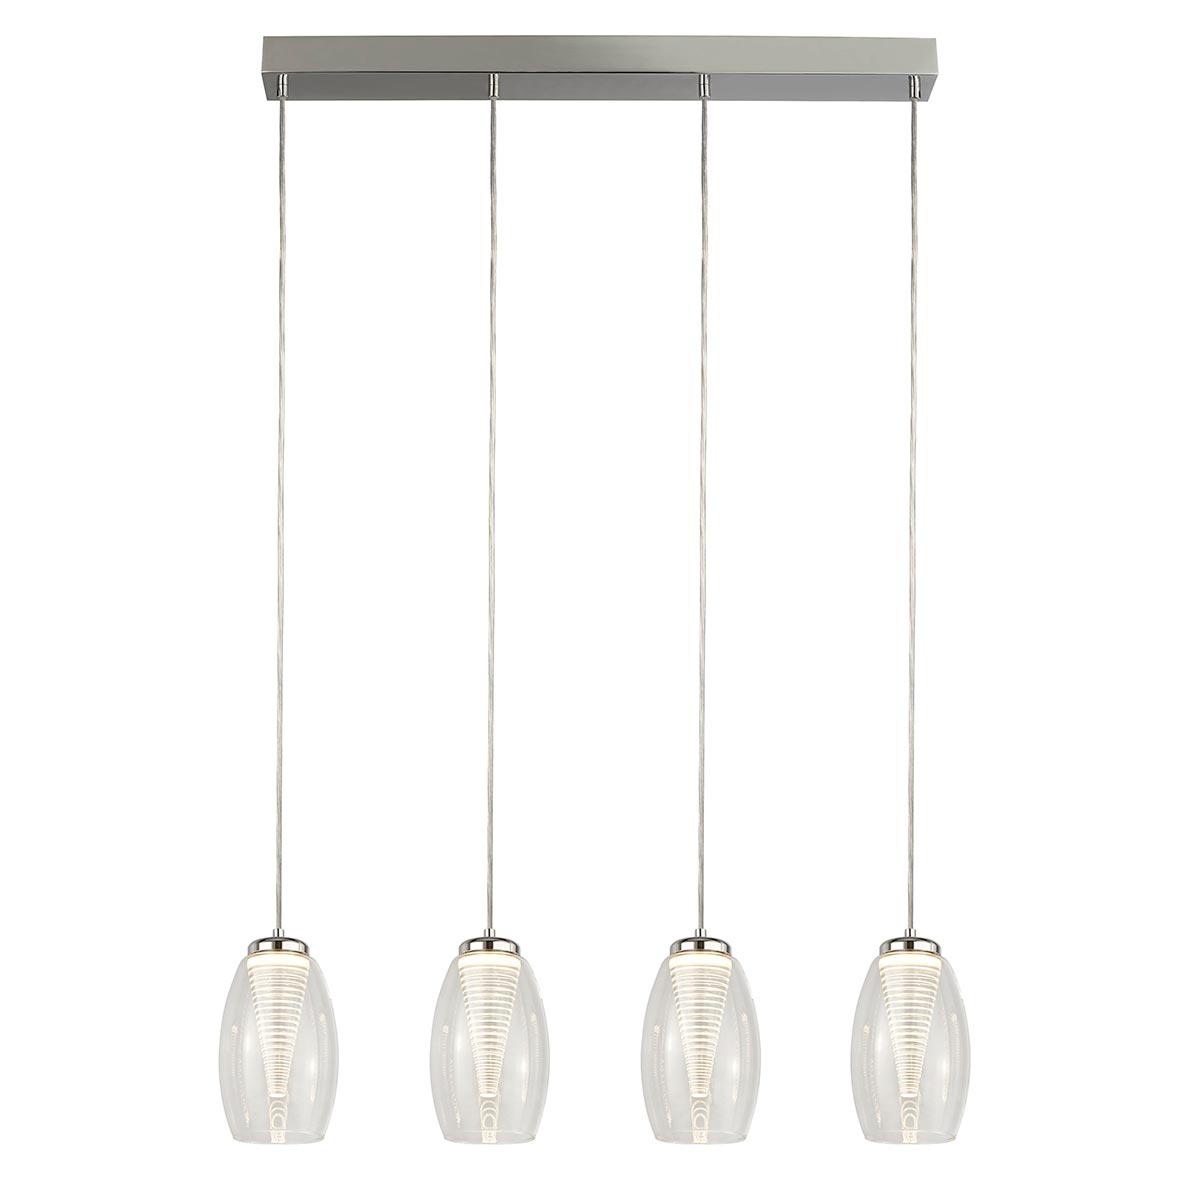 Modern 4 Lamp LED Clear Glass Bar Pendant Ceiling Light Chrome